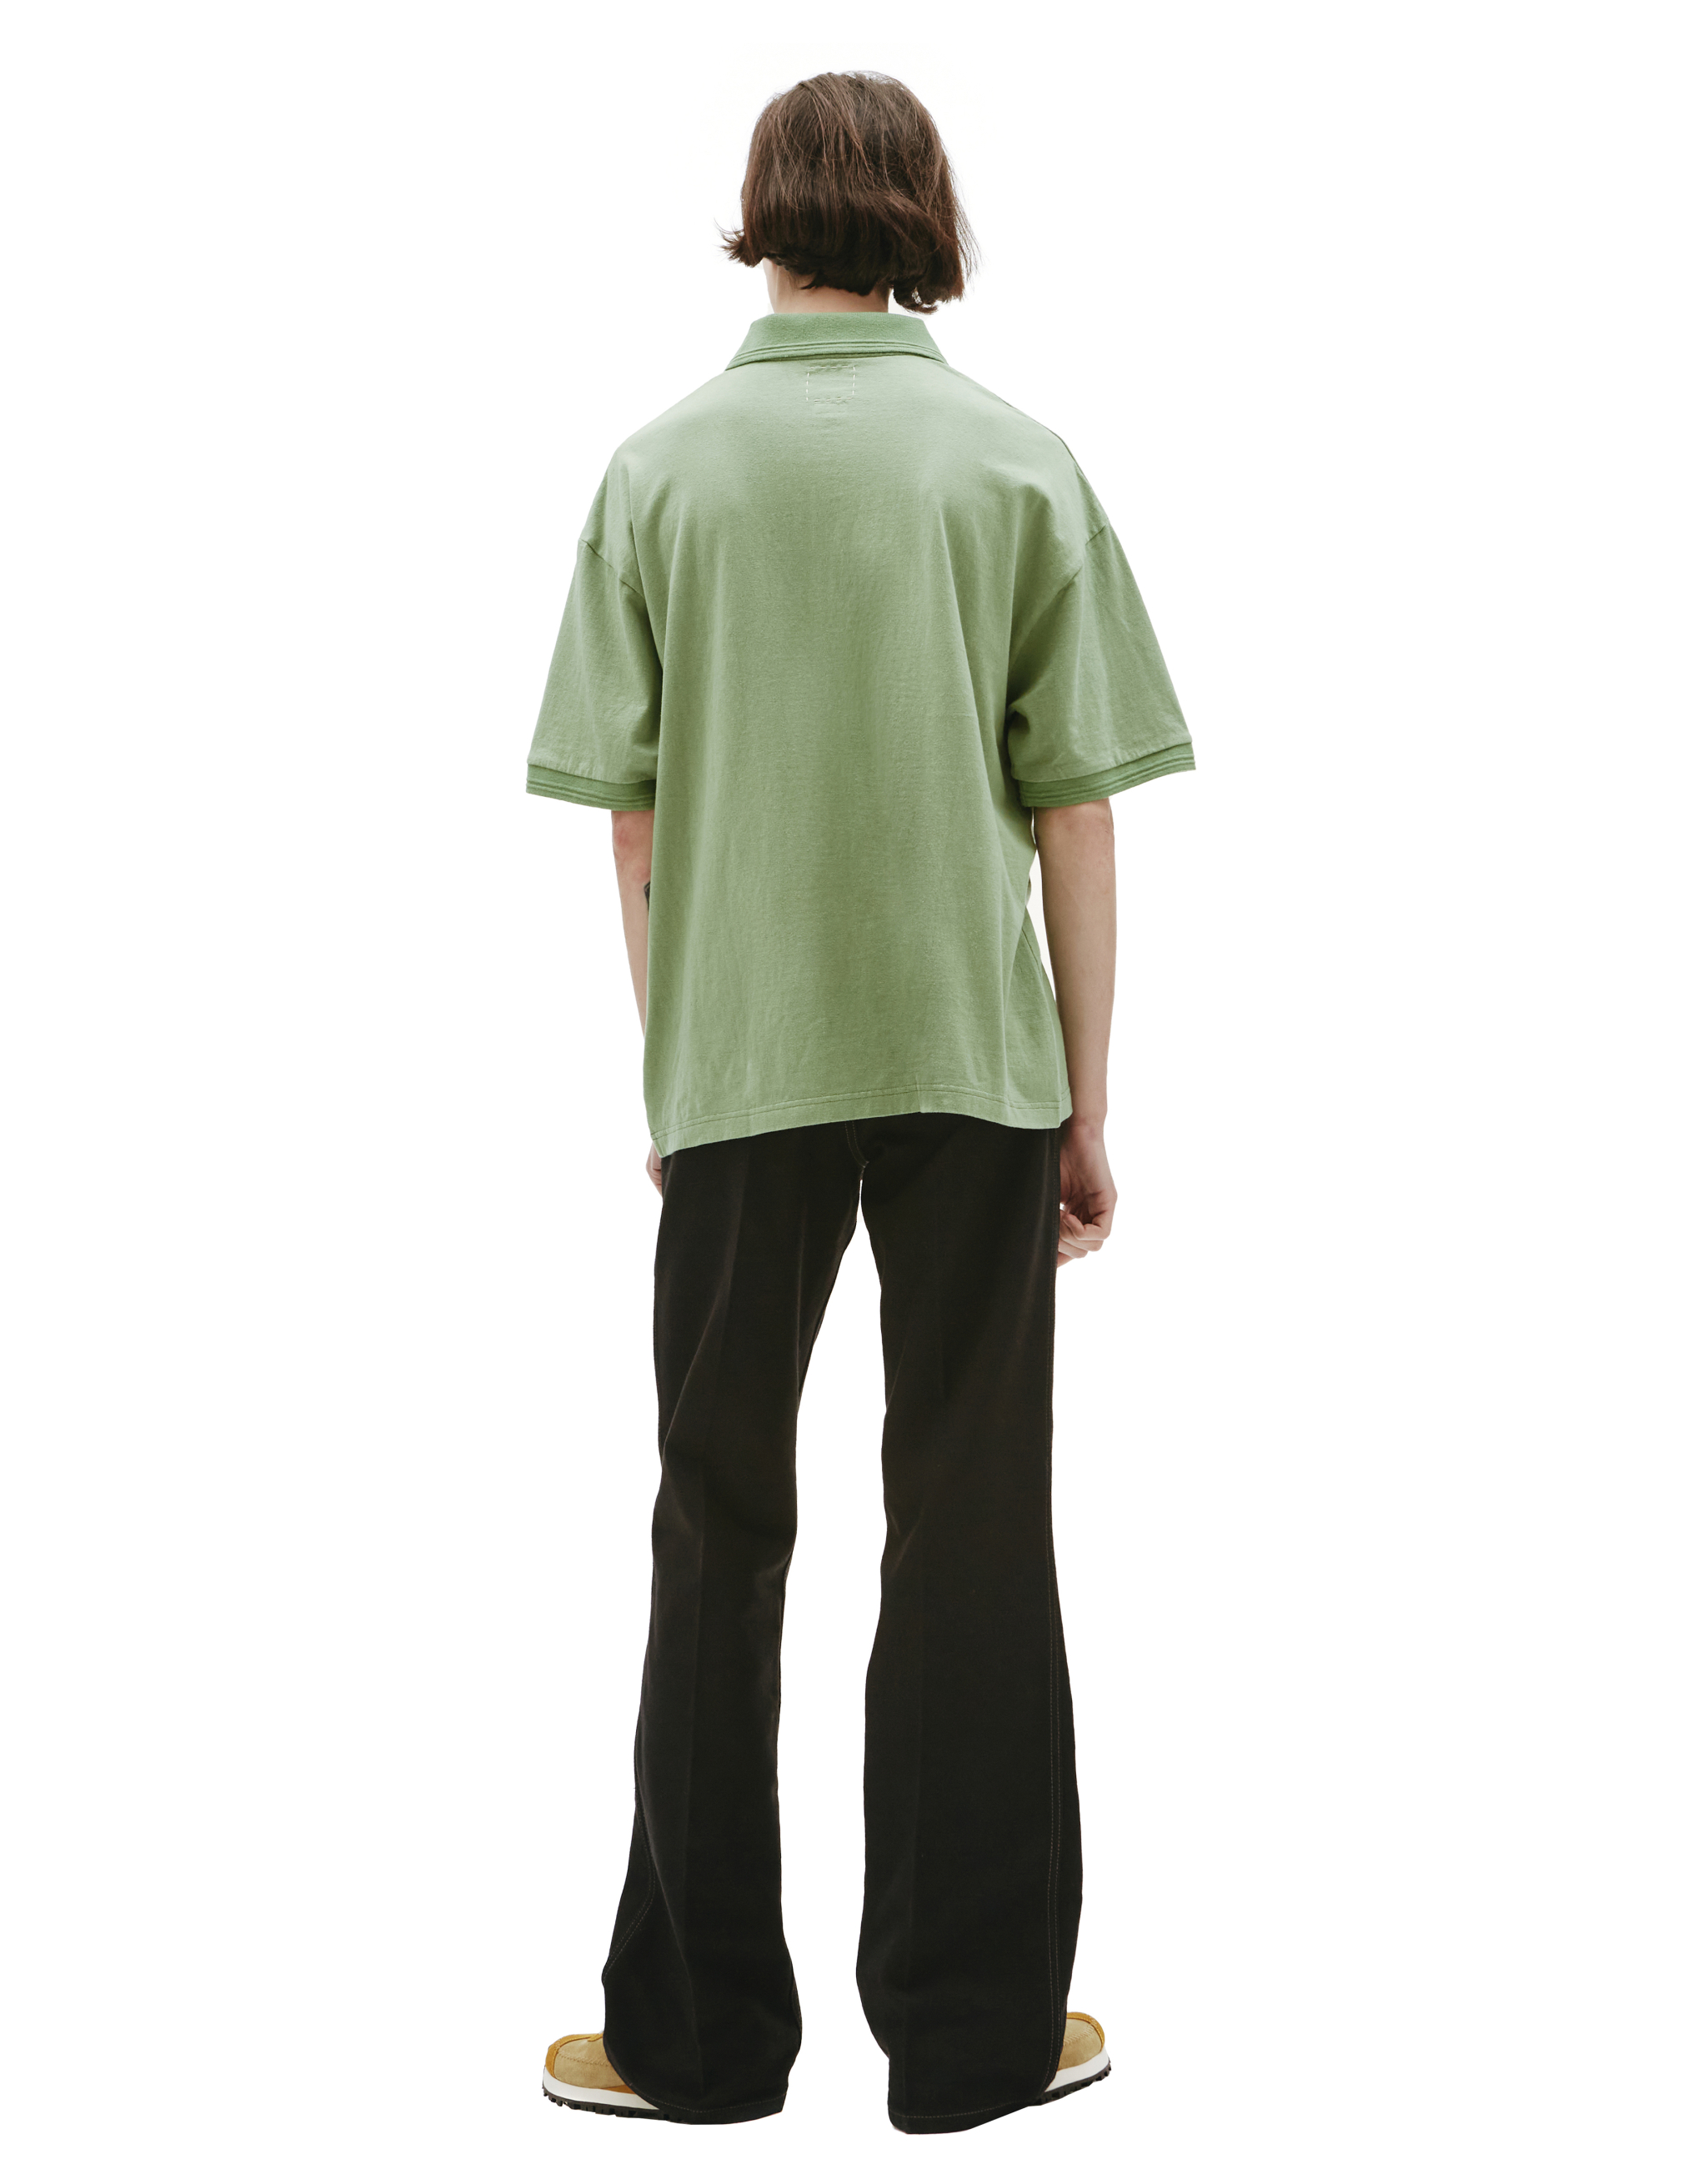 Поло Jumbo Weller с вышивкой visvim 0122105010018/l.grn, размер 5 0122105010018/l.grn - фото 3